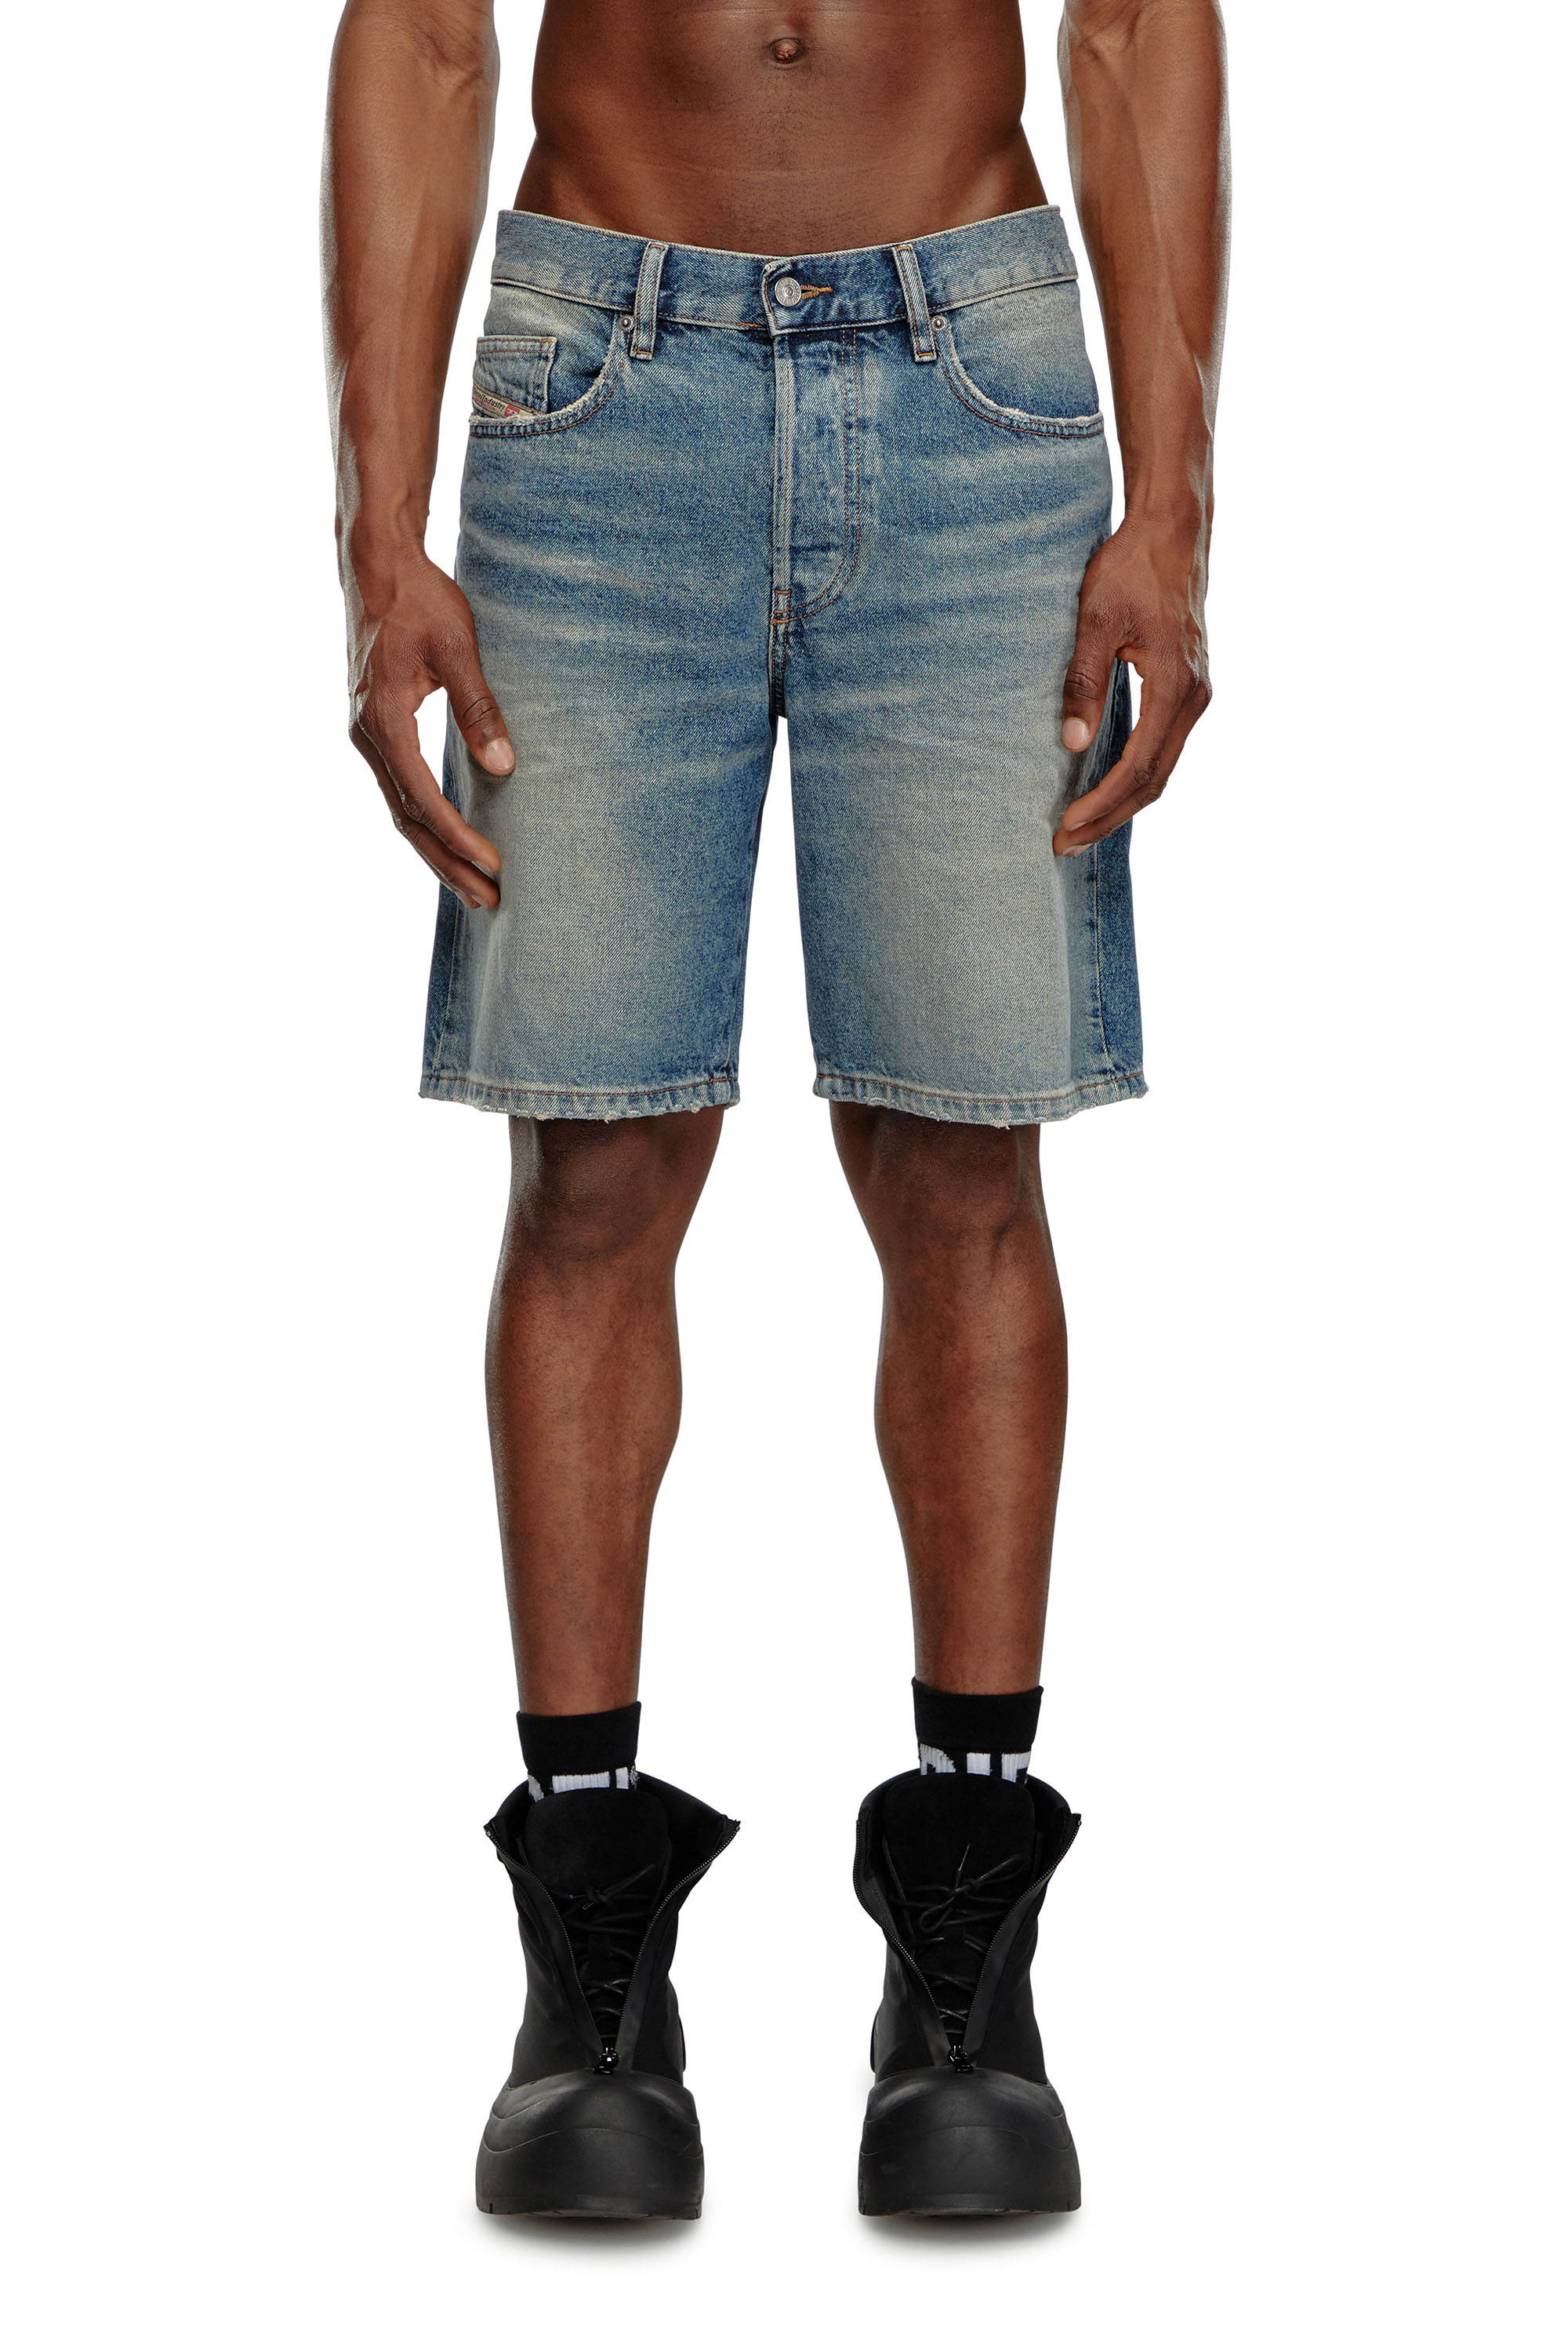 Diesel - Pantalones cortos en denim - Shorts - Hombre - Azul marino